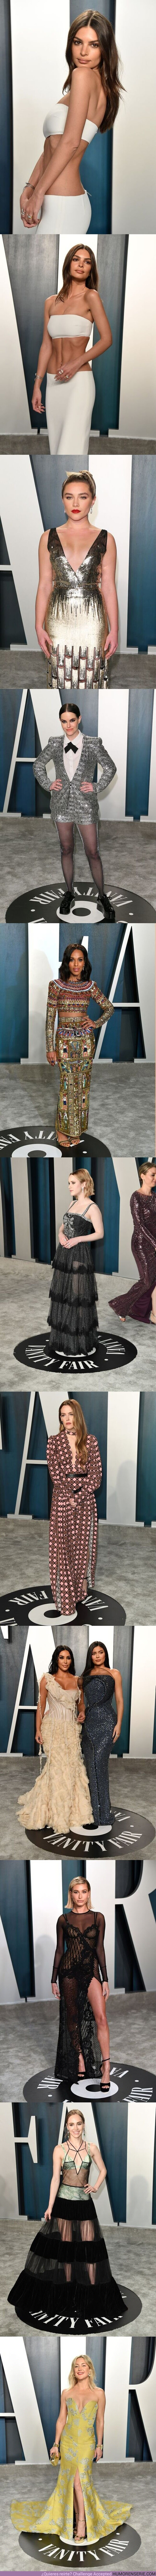 47173 - Todo el mundo está hablando del No-vestido de Emily Ratajkowski en los Oscar